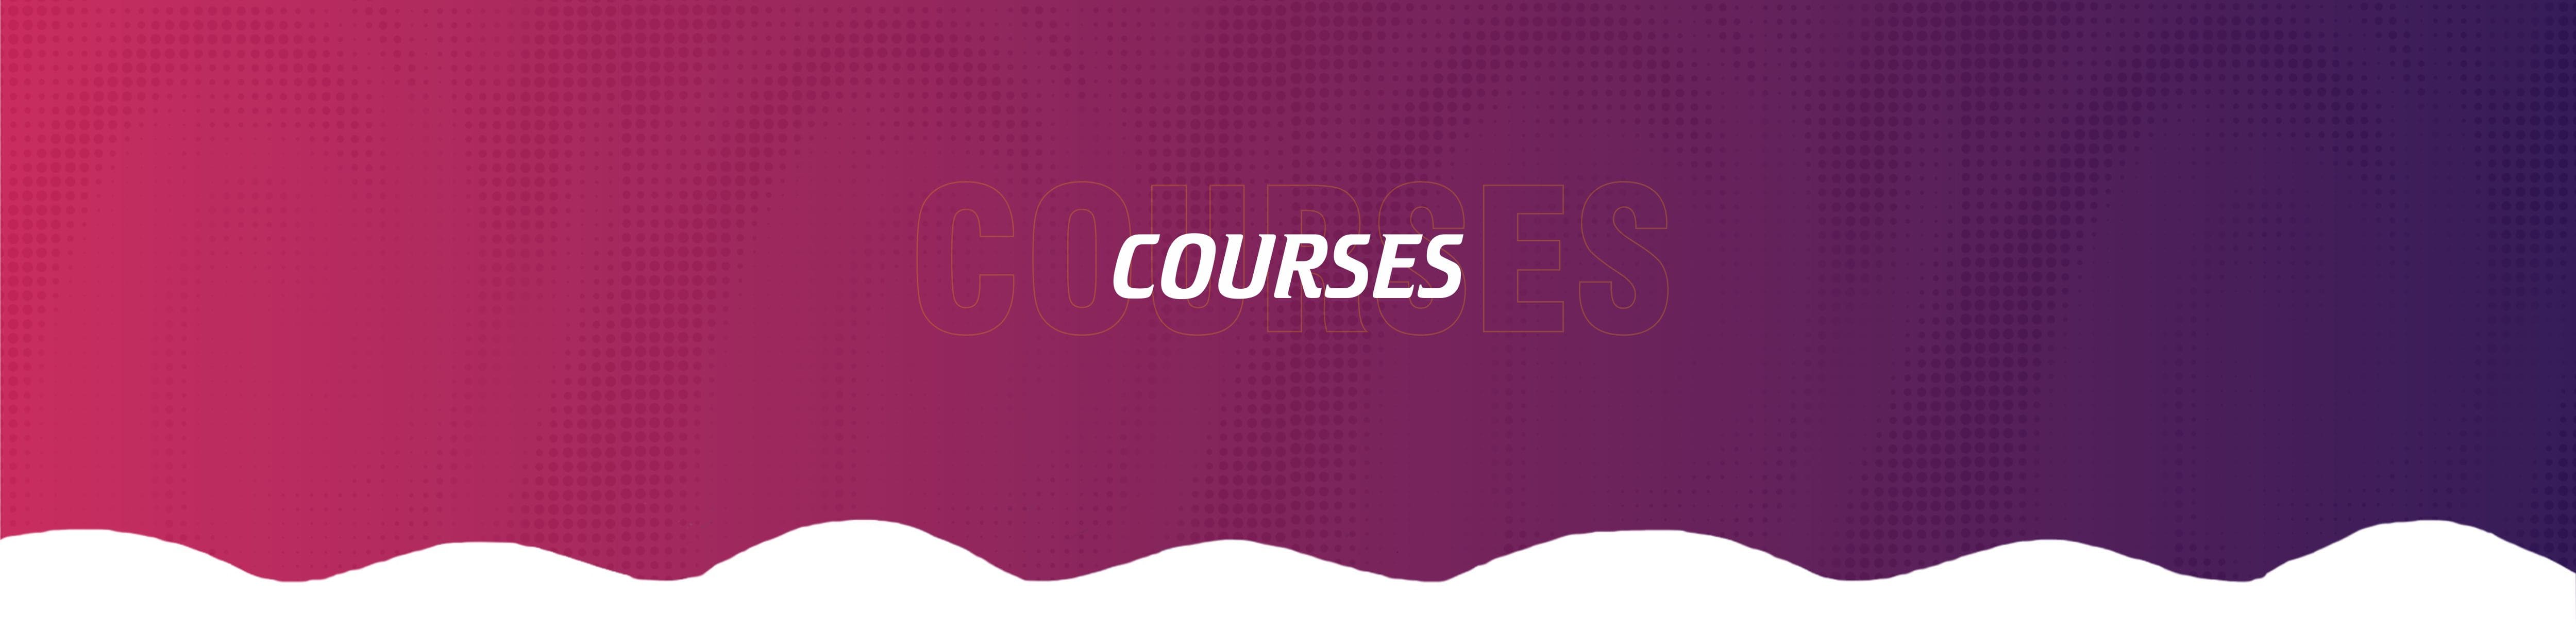 mcit computer training institute courses